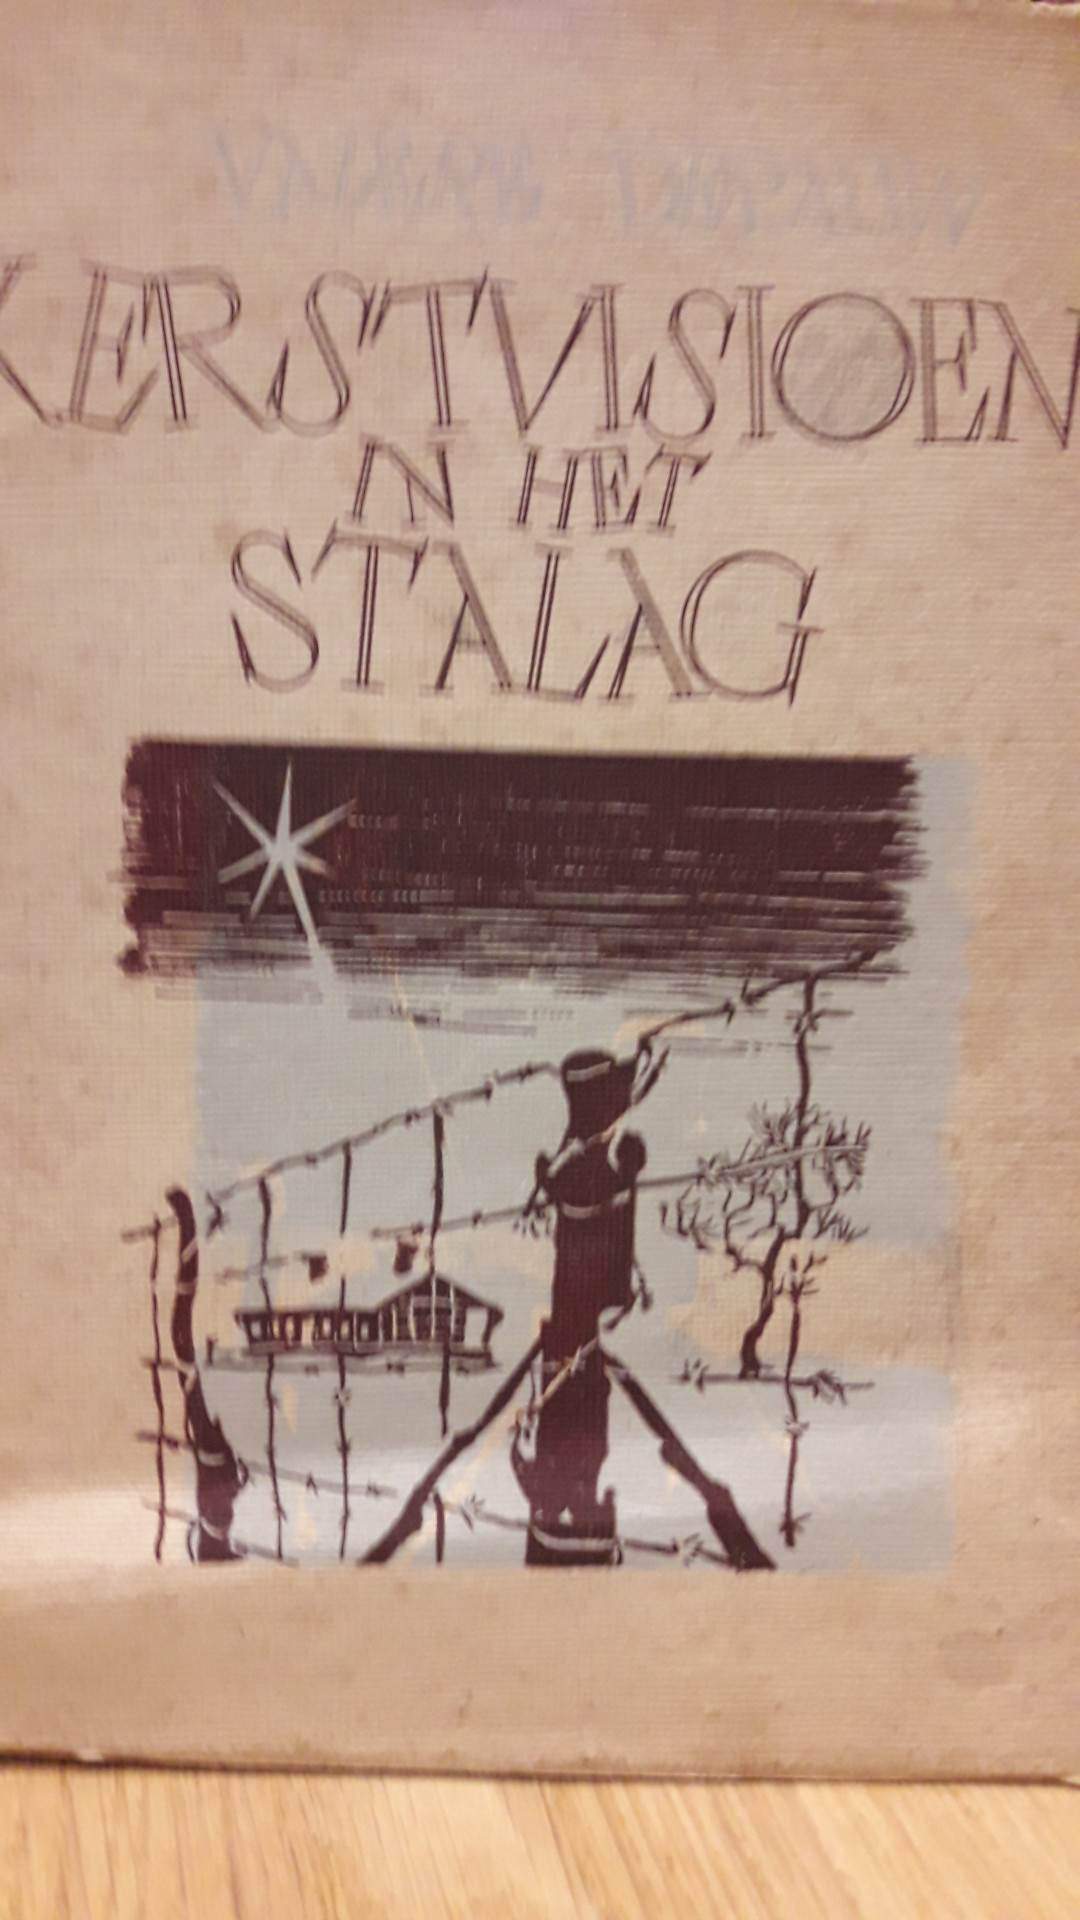 Kerstvisioen in het Stalag - Valere Depauw - 1943 / 46 blz